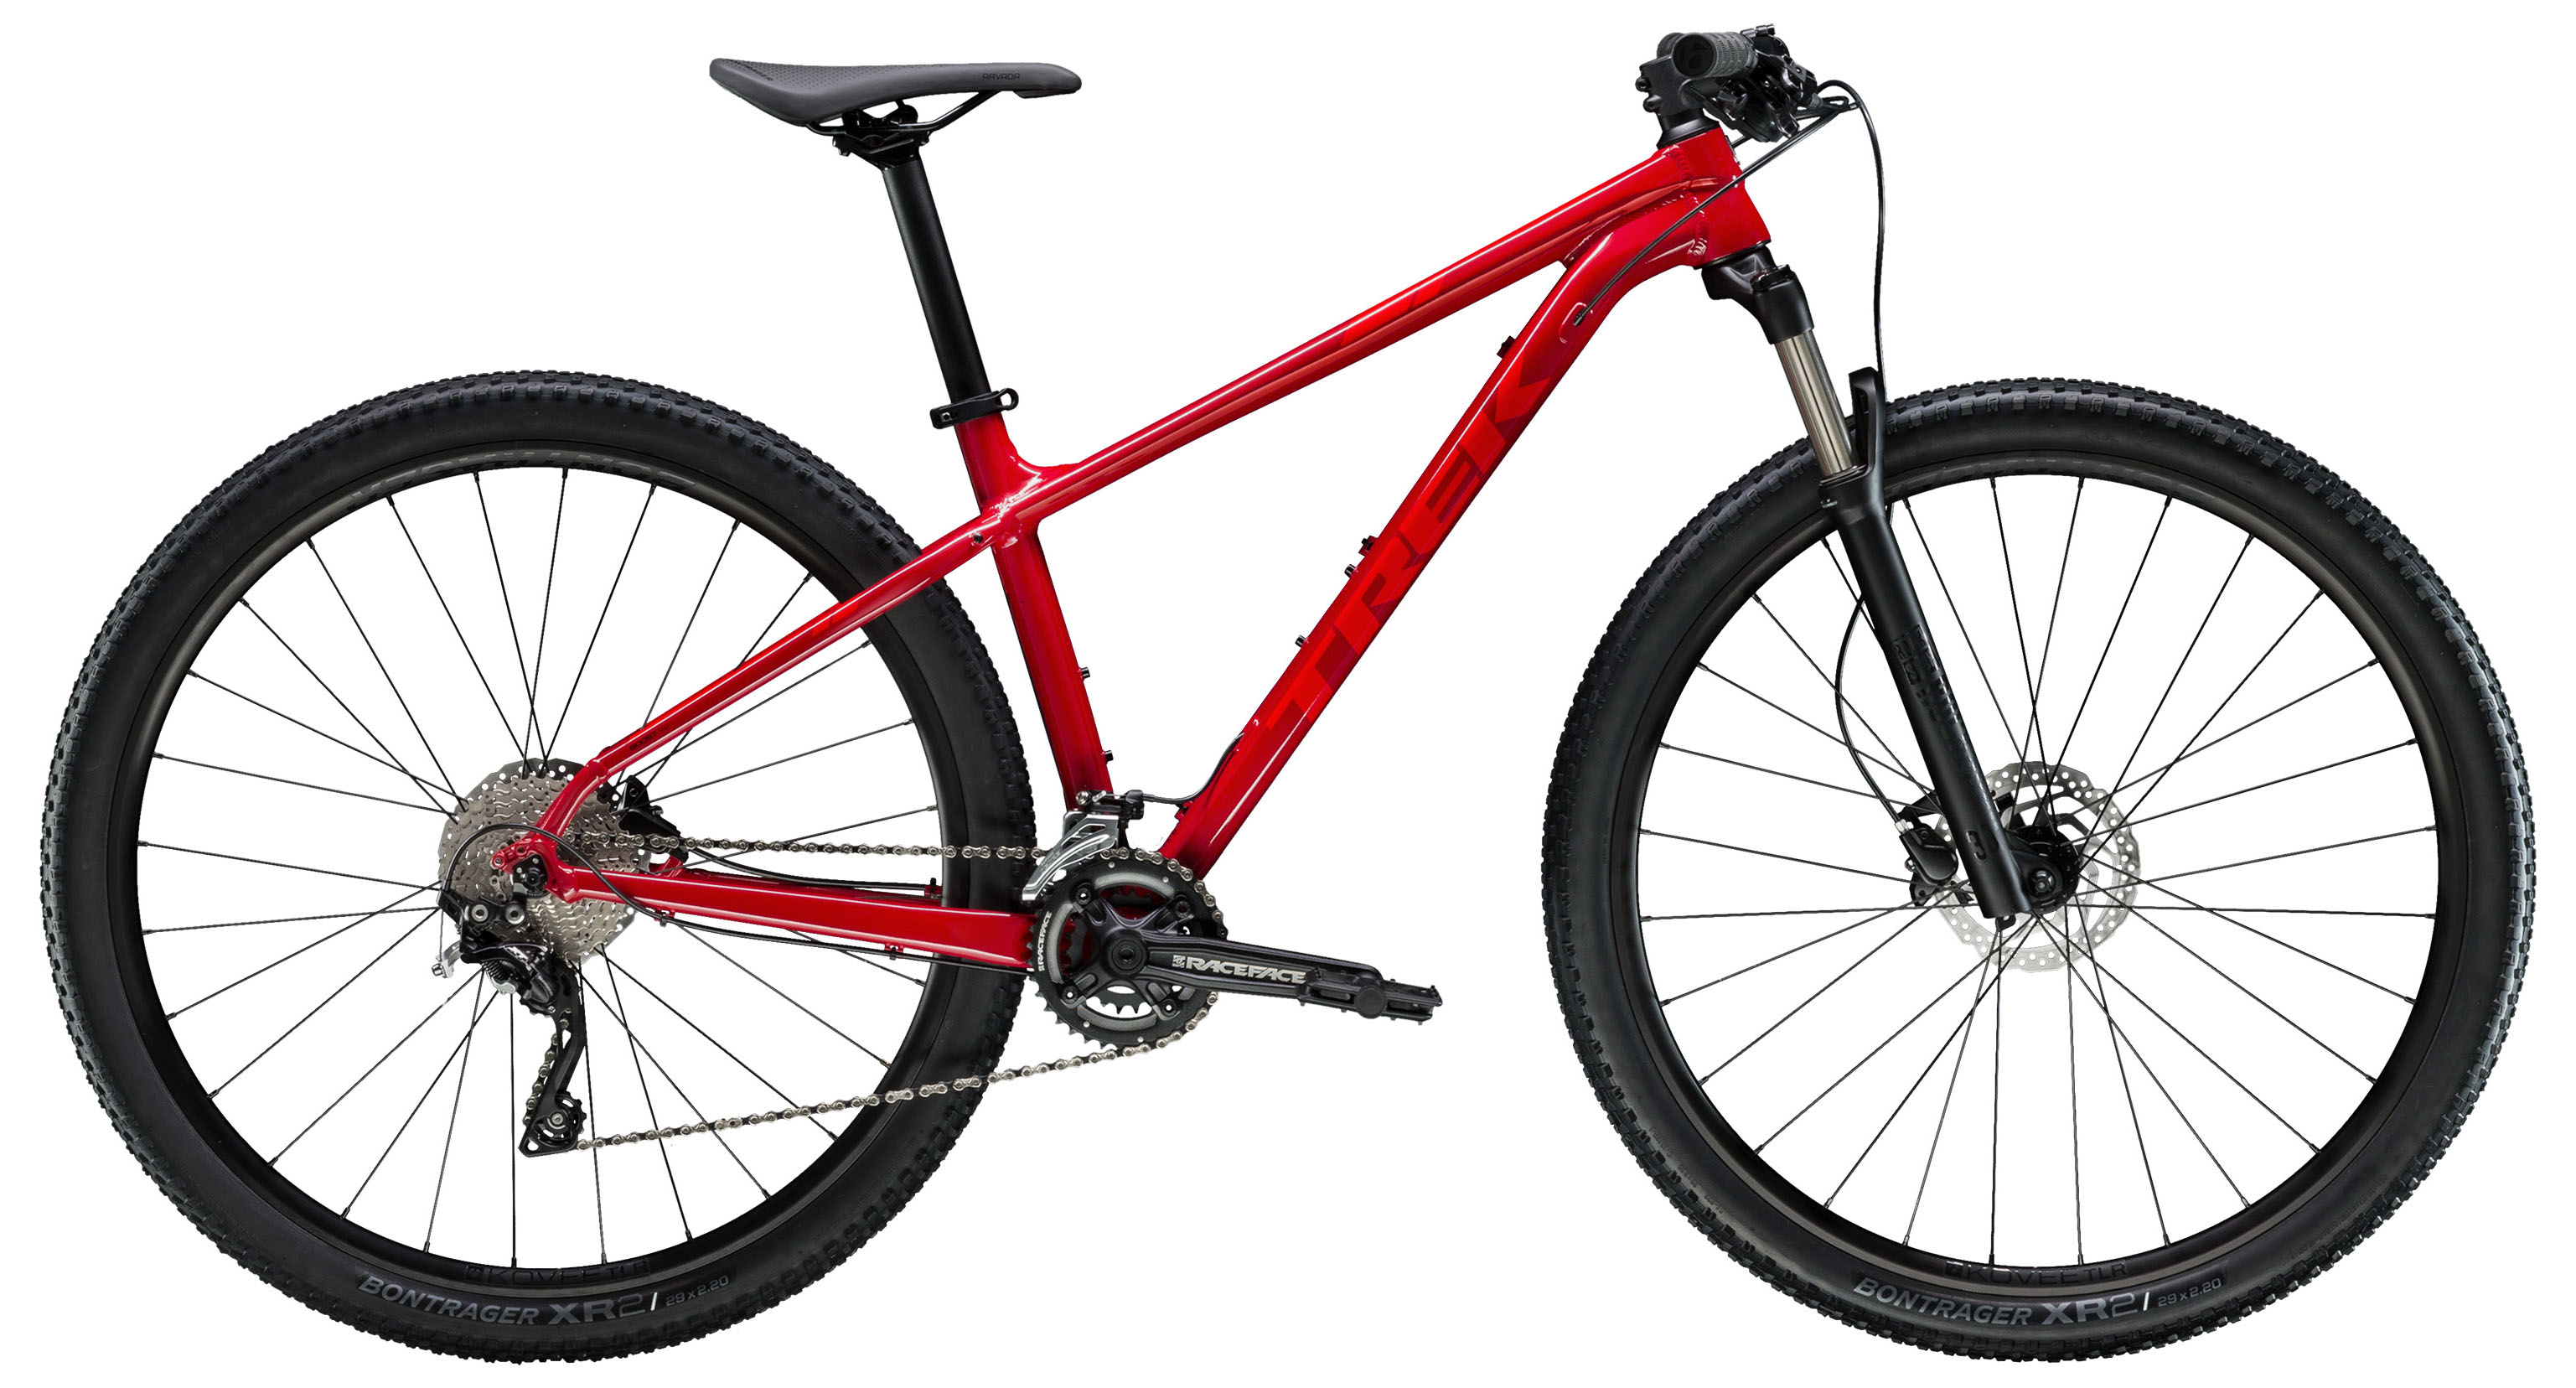  Отзывы о Горном велосипеде Trek X-Caliber 8 27,5 2019